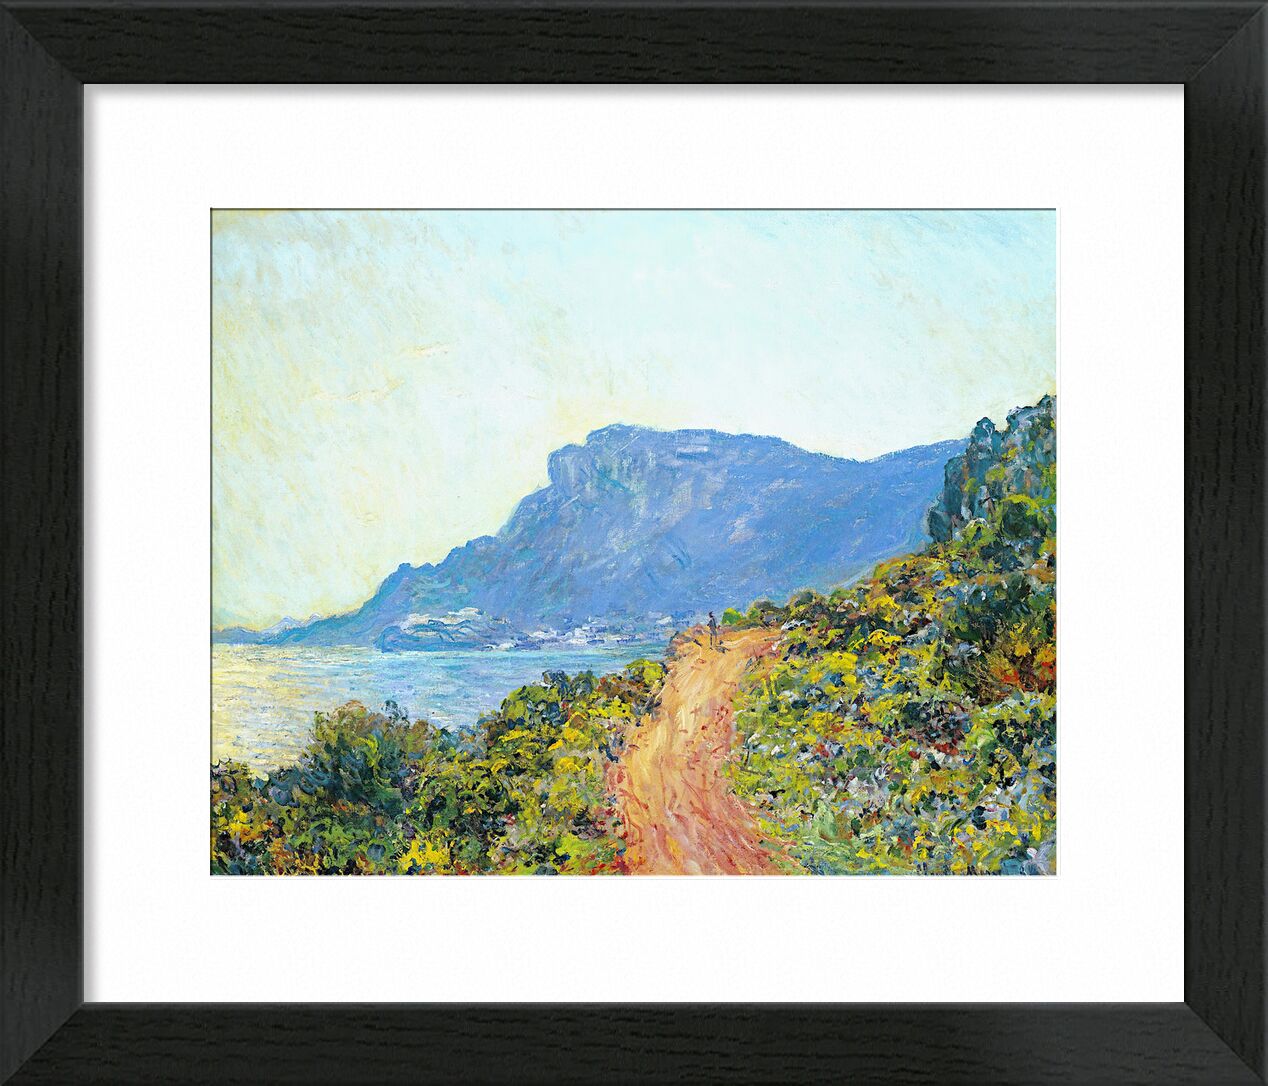 La Corniche bei Monaco - Claude Monet von Bildende Kunst, Prodi Art, hügel, CLAUDE MONET, monet, Landschaft, Meer, Berge, Weg